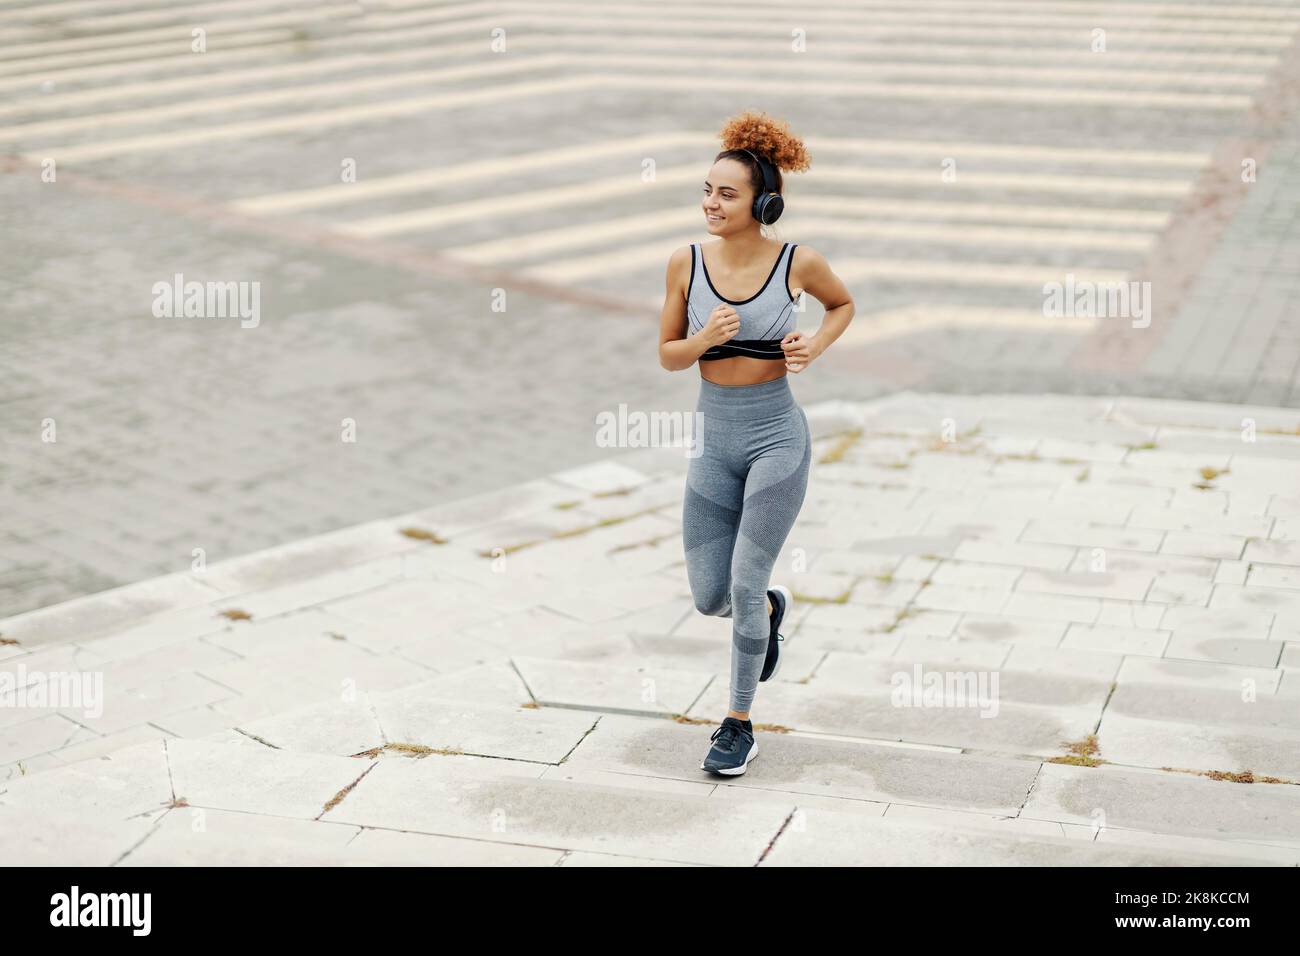 Die schnelle, fit gekleidete Sportlerin mit lockigen Haaren läuft mit Kopfhörern auf der Straße. Sie hört sich ihre Lieblingsradios an Stockfoto